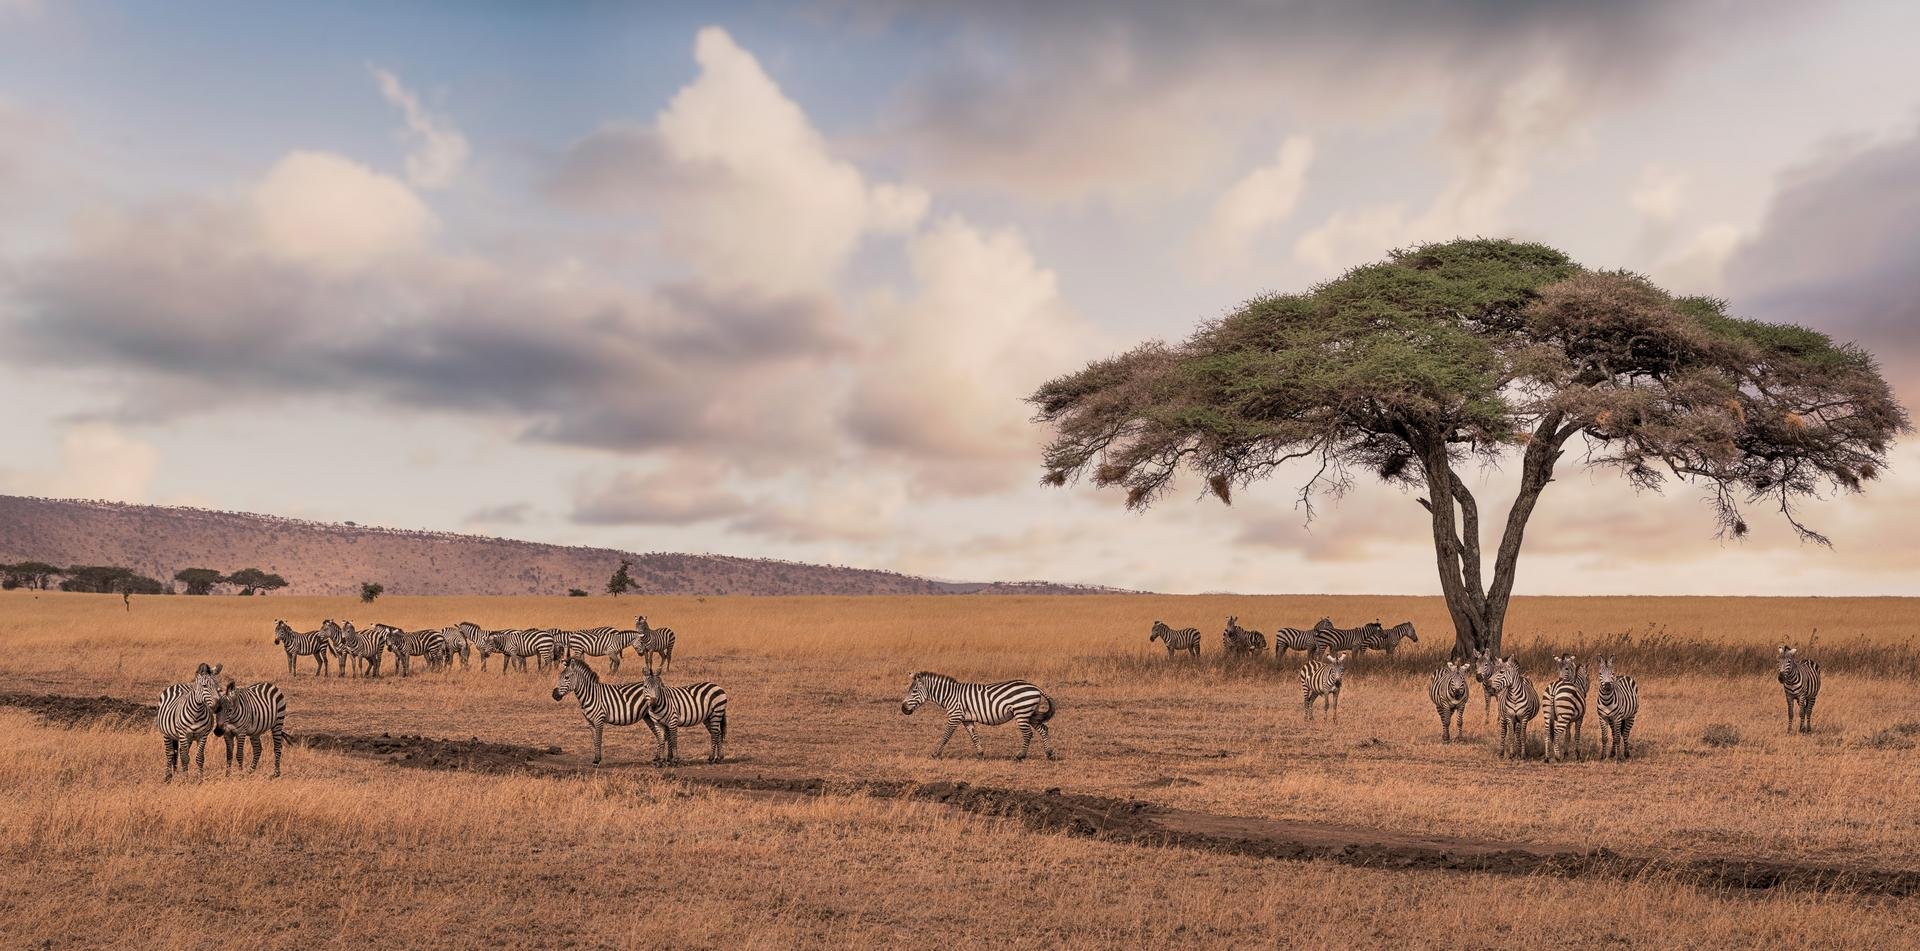 Safari avec zebre dans le parc national du Serengeti Tanzanie